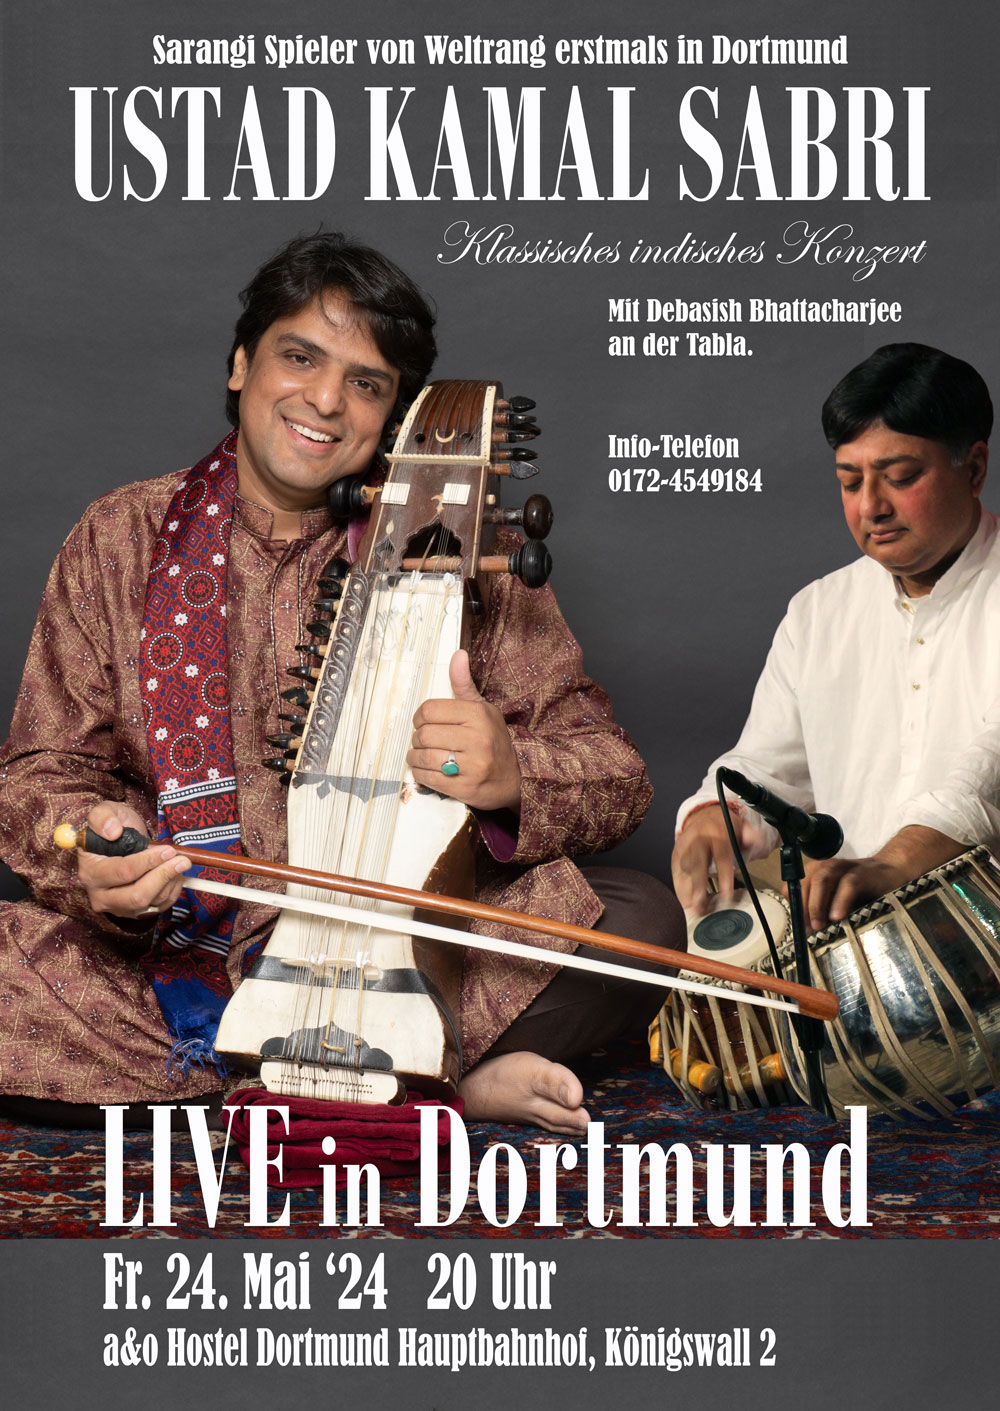 Sarangi-Konzert mit Ustad Kamal Sabri und Debasish Bhattacharjee in Dortmund